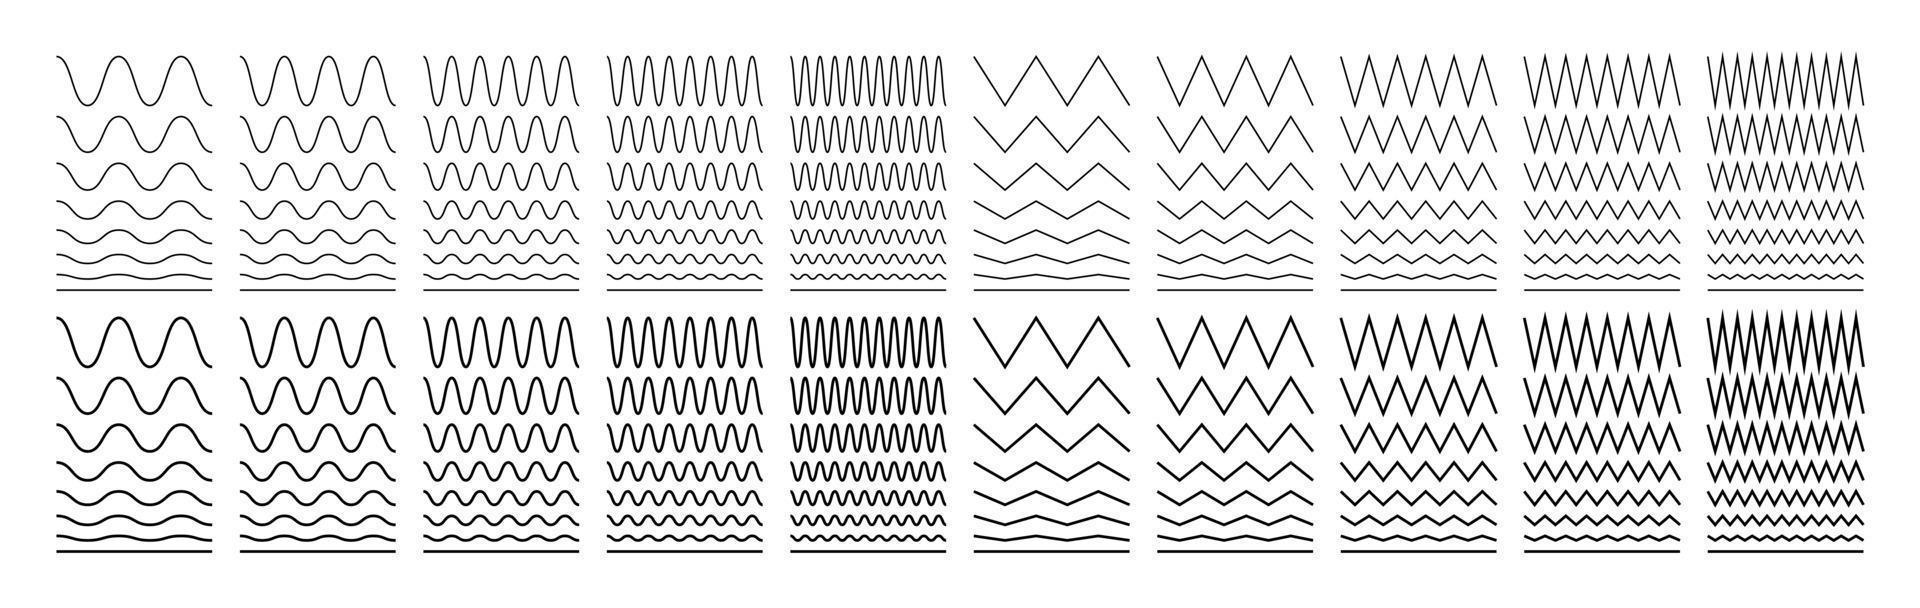 vågiga, sicksackiga och sinusformade linjer. set dekor, avdelare. isolerade vektorillustration på vit bakgrund. vektor